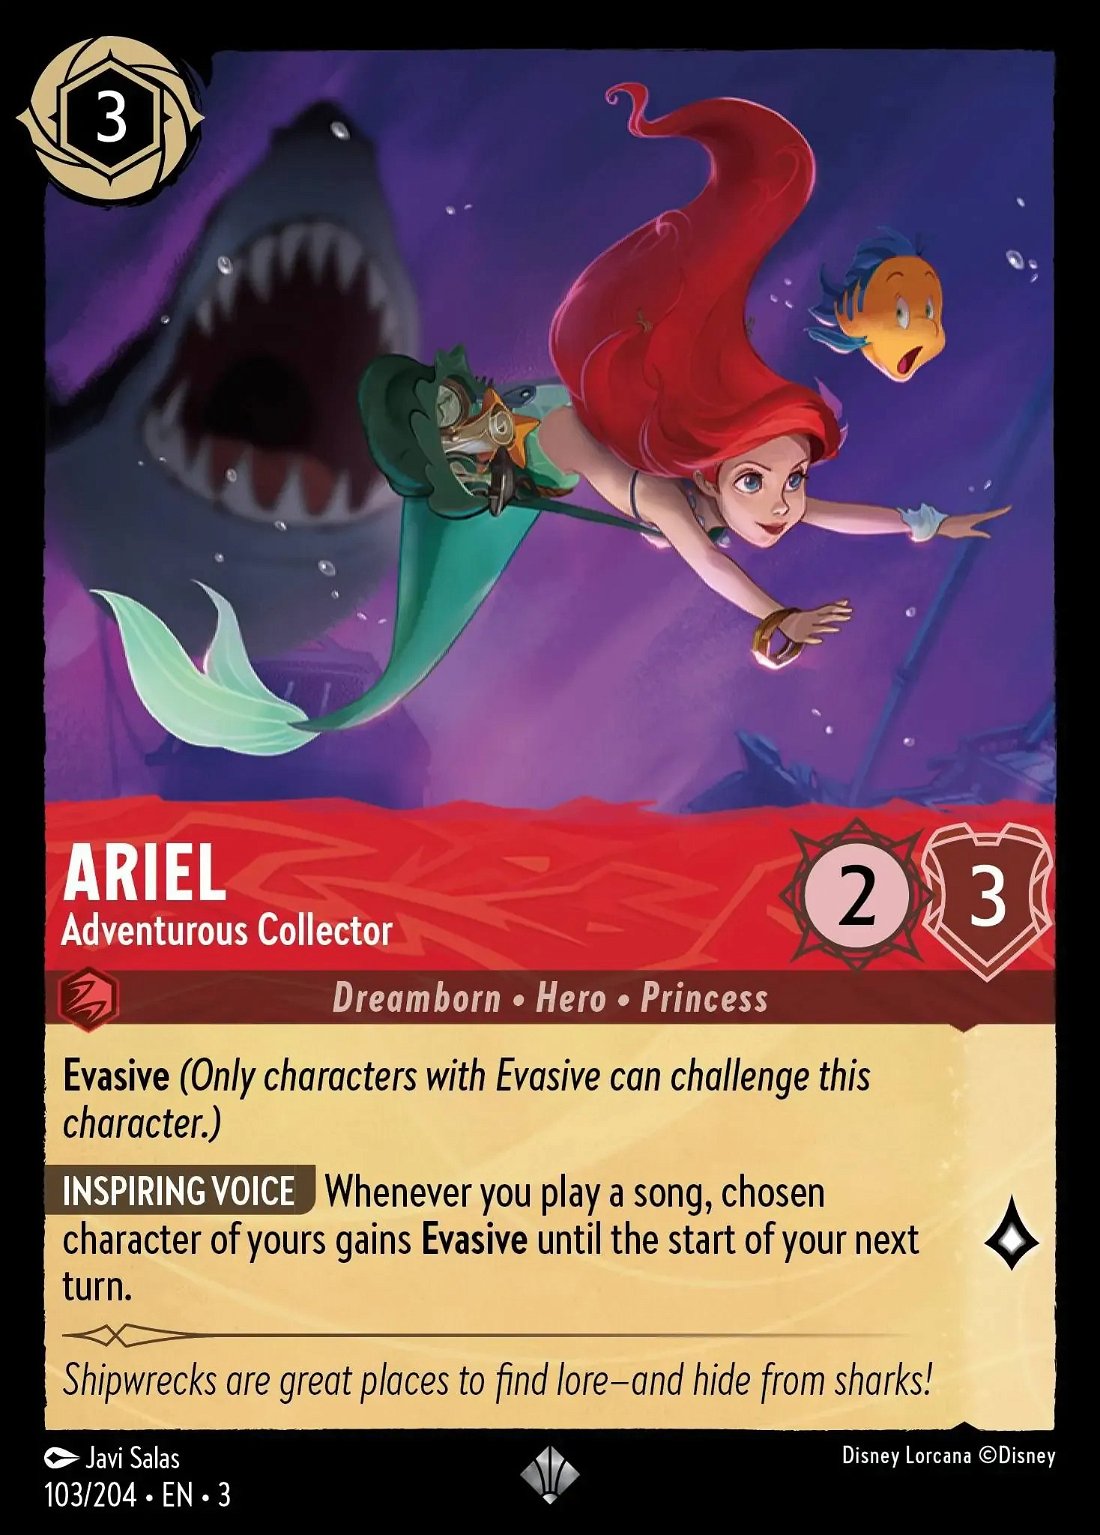 Ariel - Adventurous Collector Crop image Wallpaper